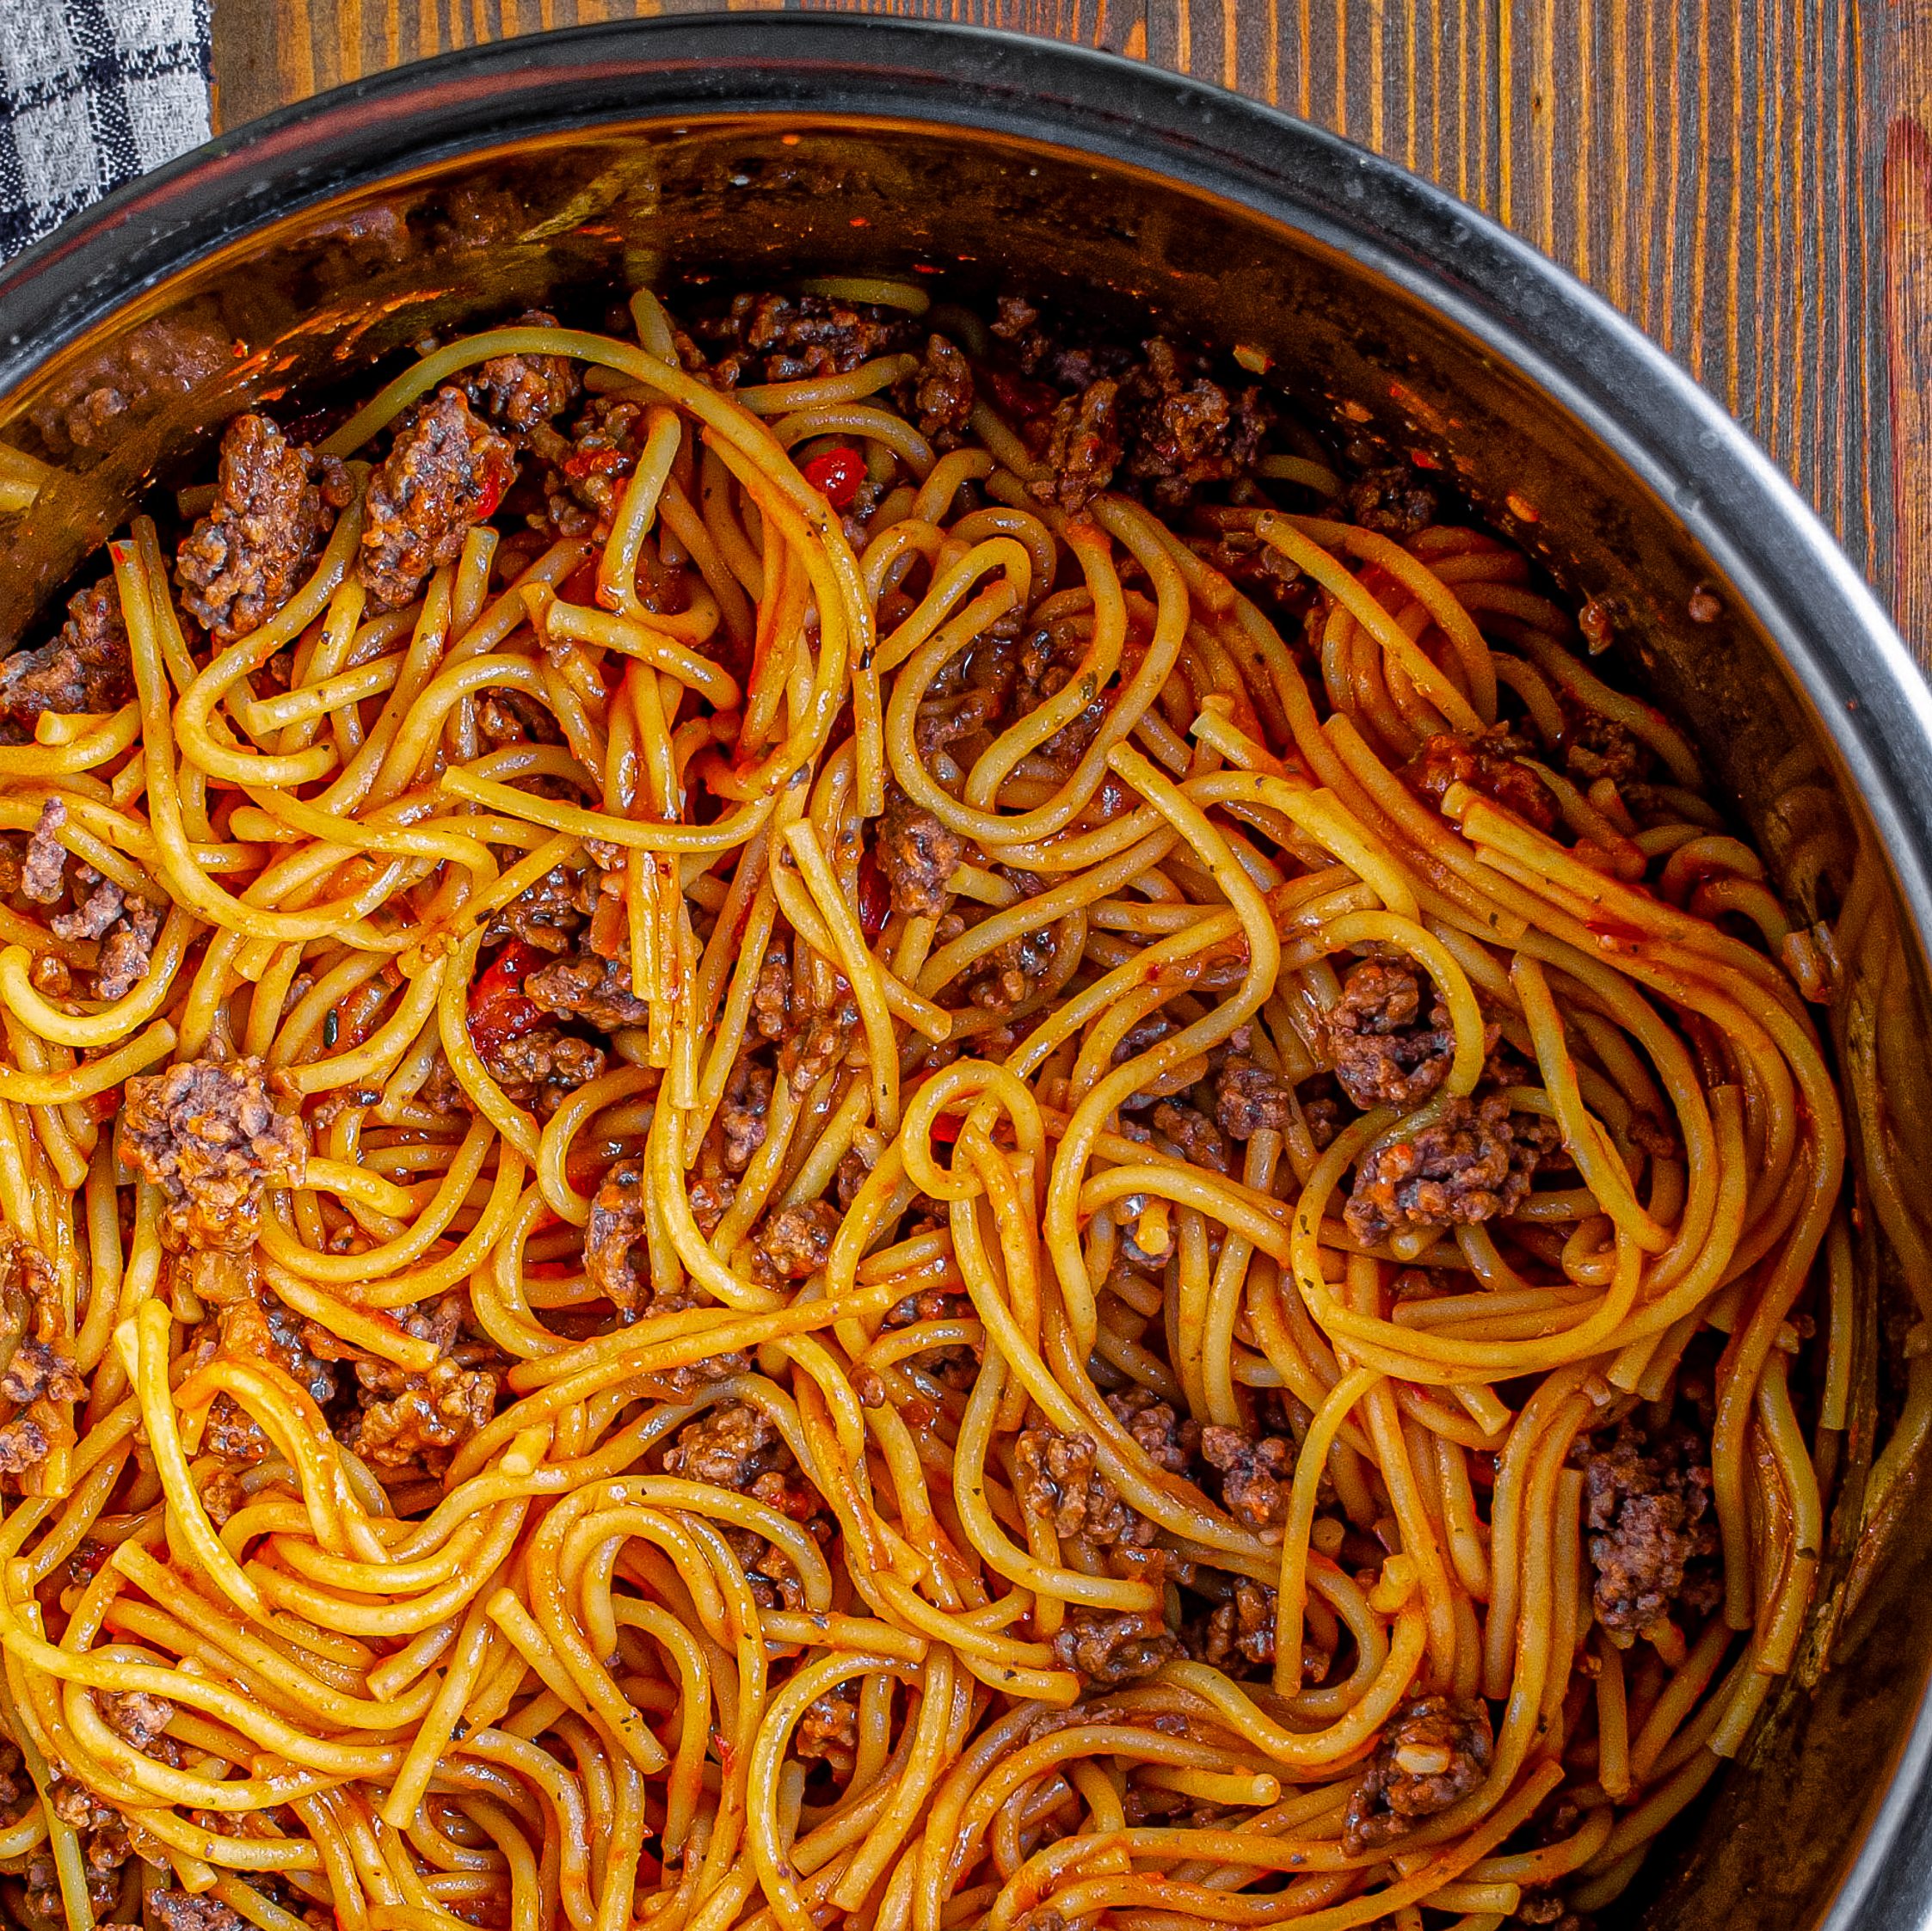 instant pot spaghetti and meatballs, spaghetti and meatballs recipe, spaghetti and meatballs instant pot